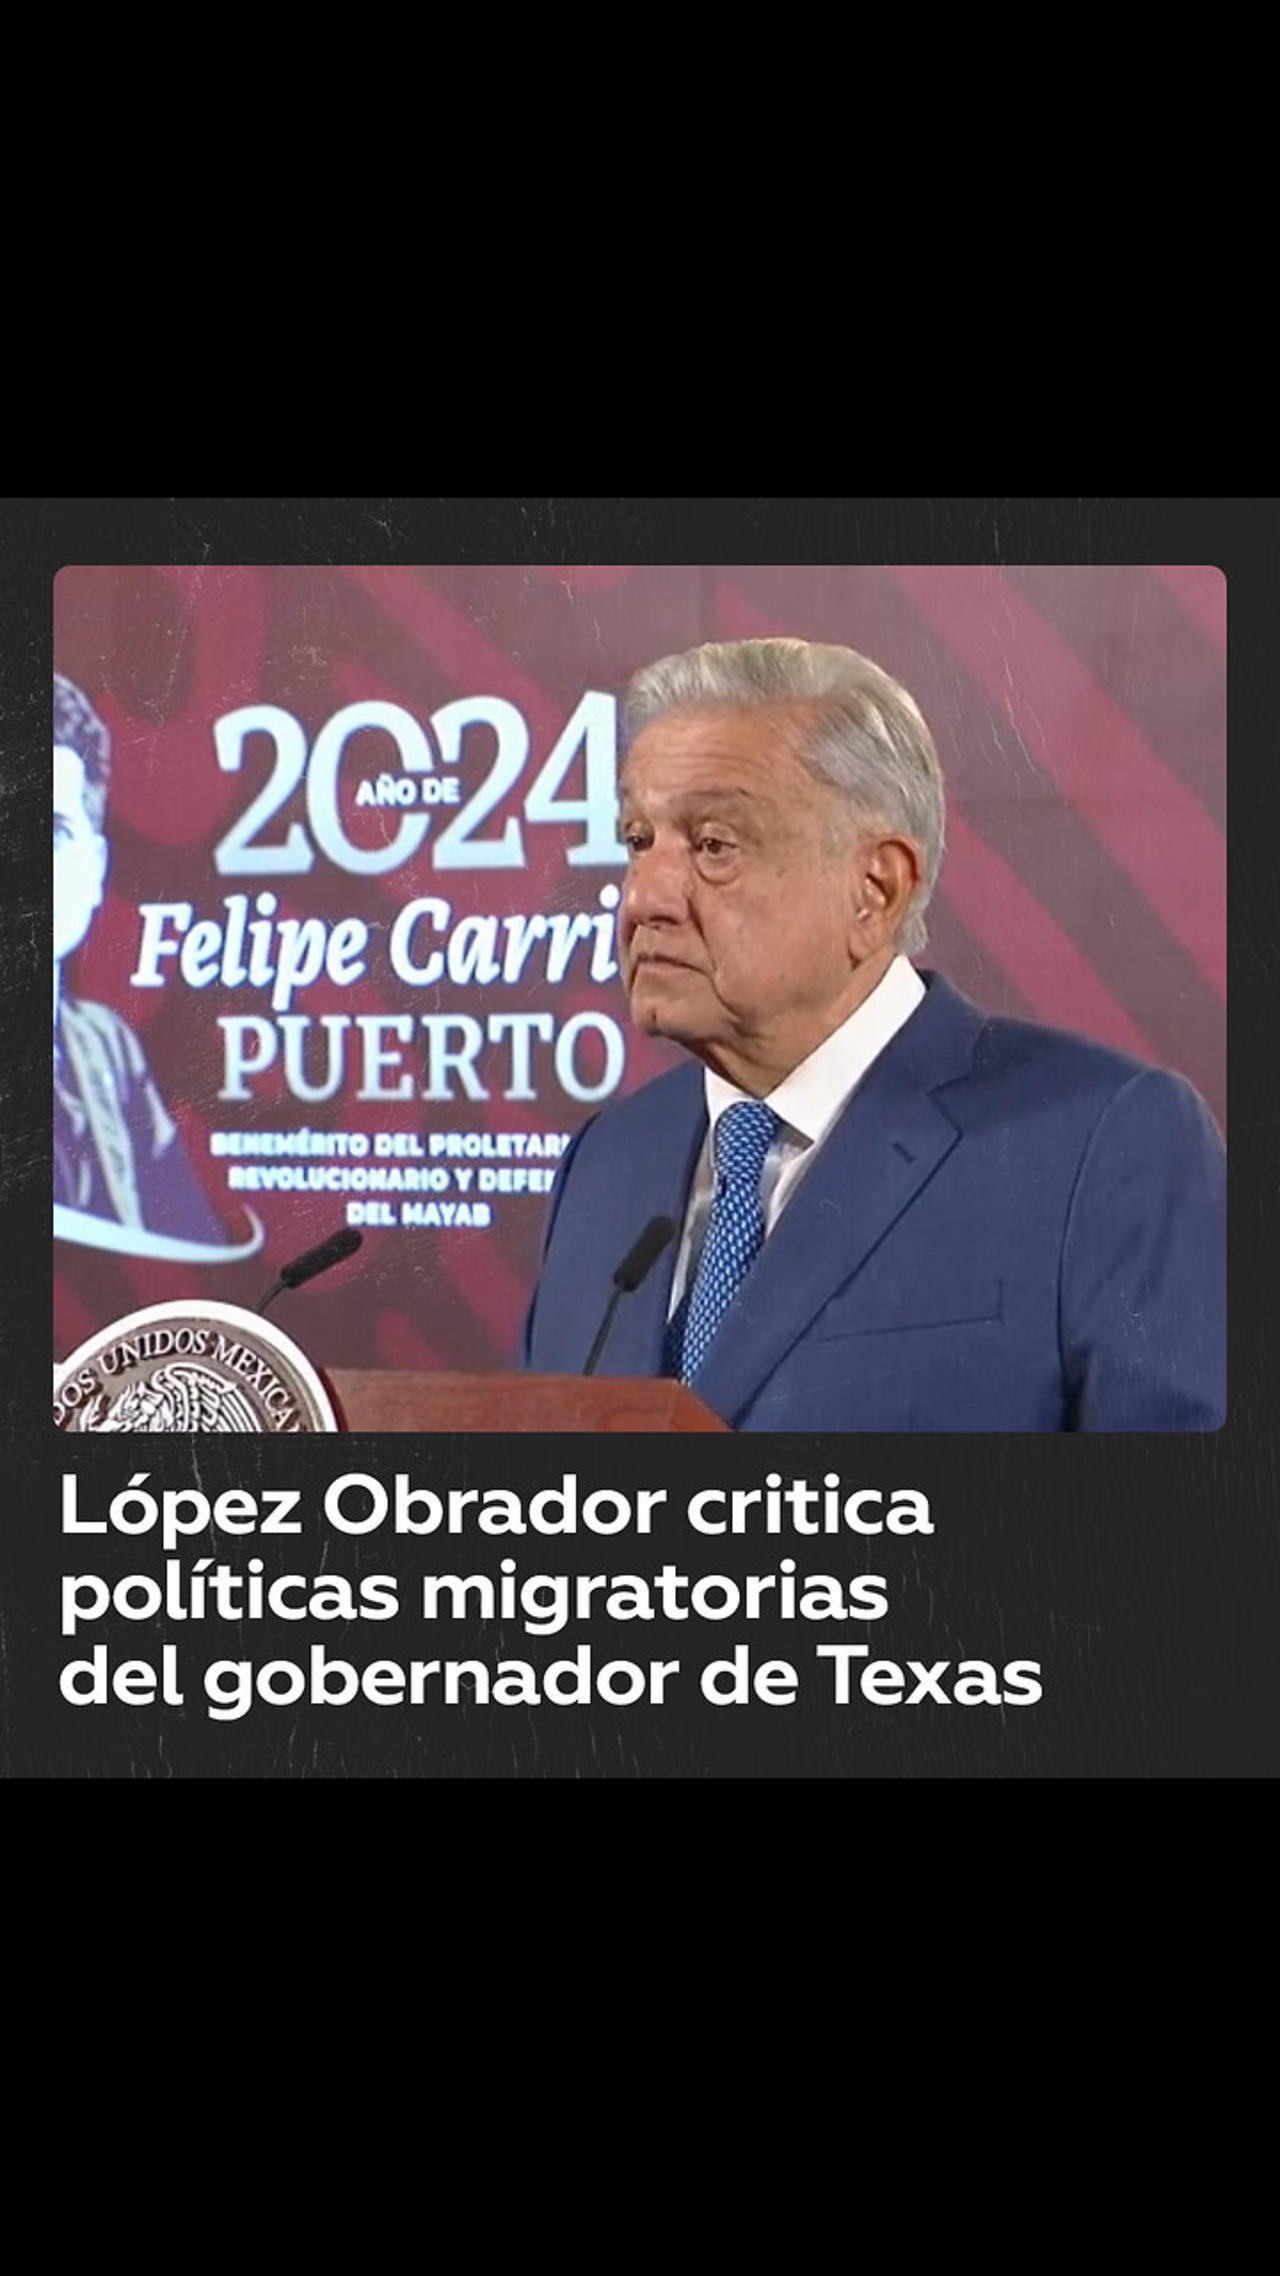 López Obrador critica al gobernador de Texas por su política migratoria